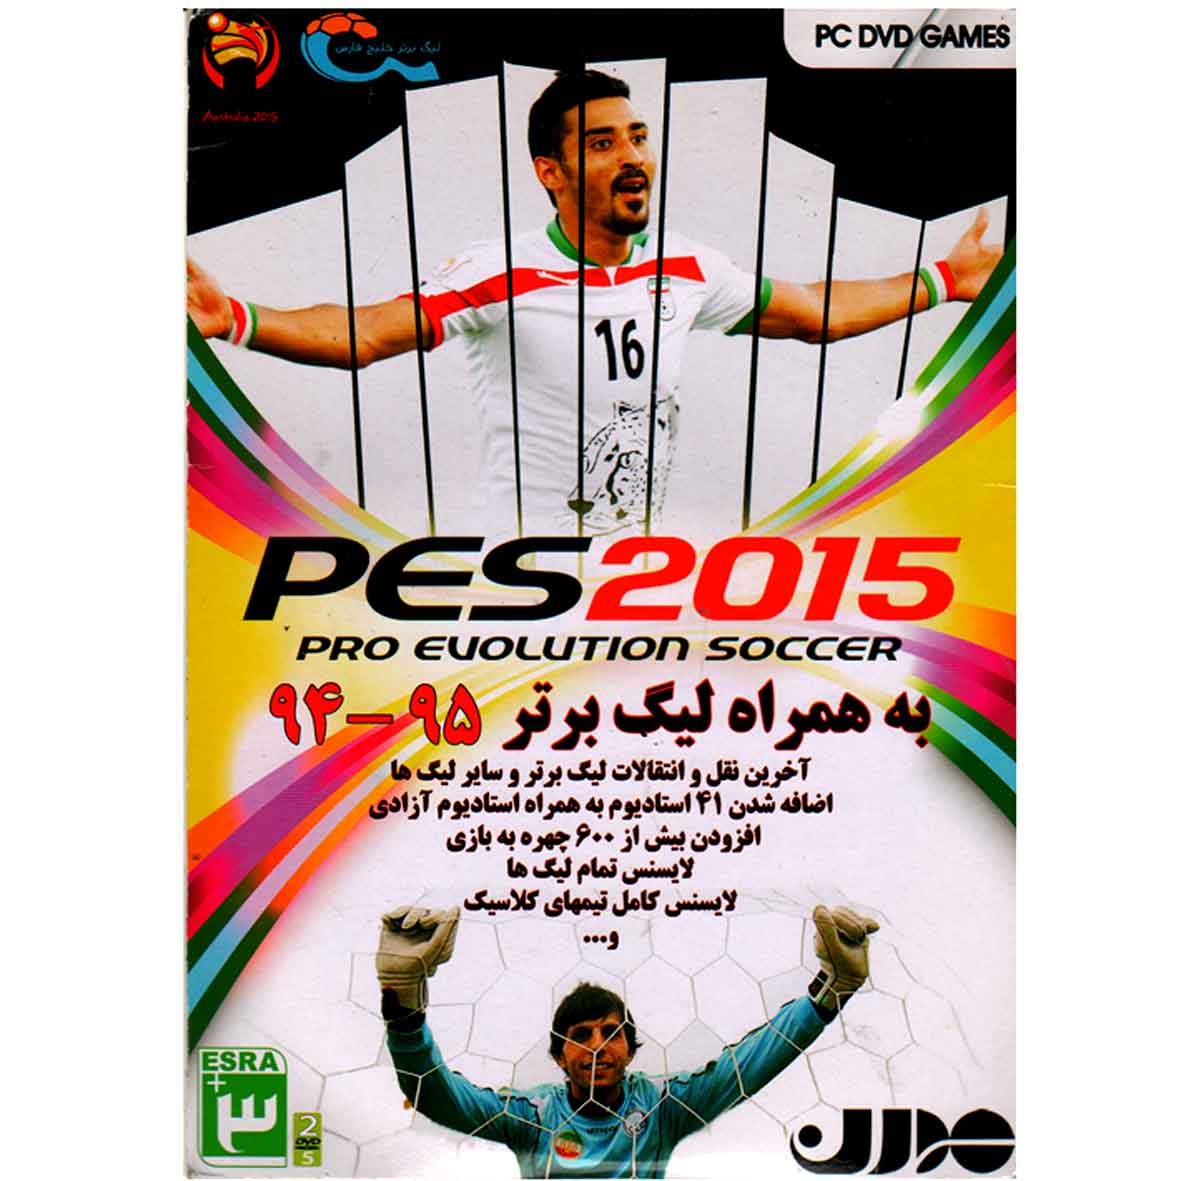 بازی PES 2015 به همراه لیگ برتر 94-95 مخصوص PC